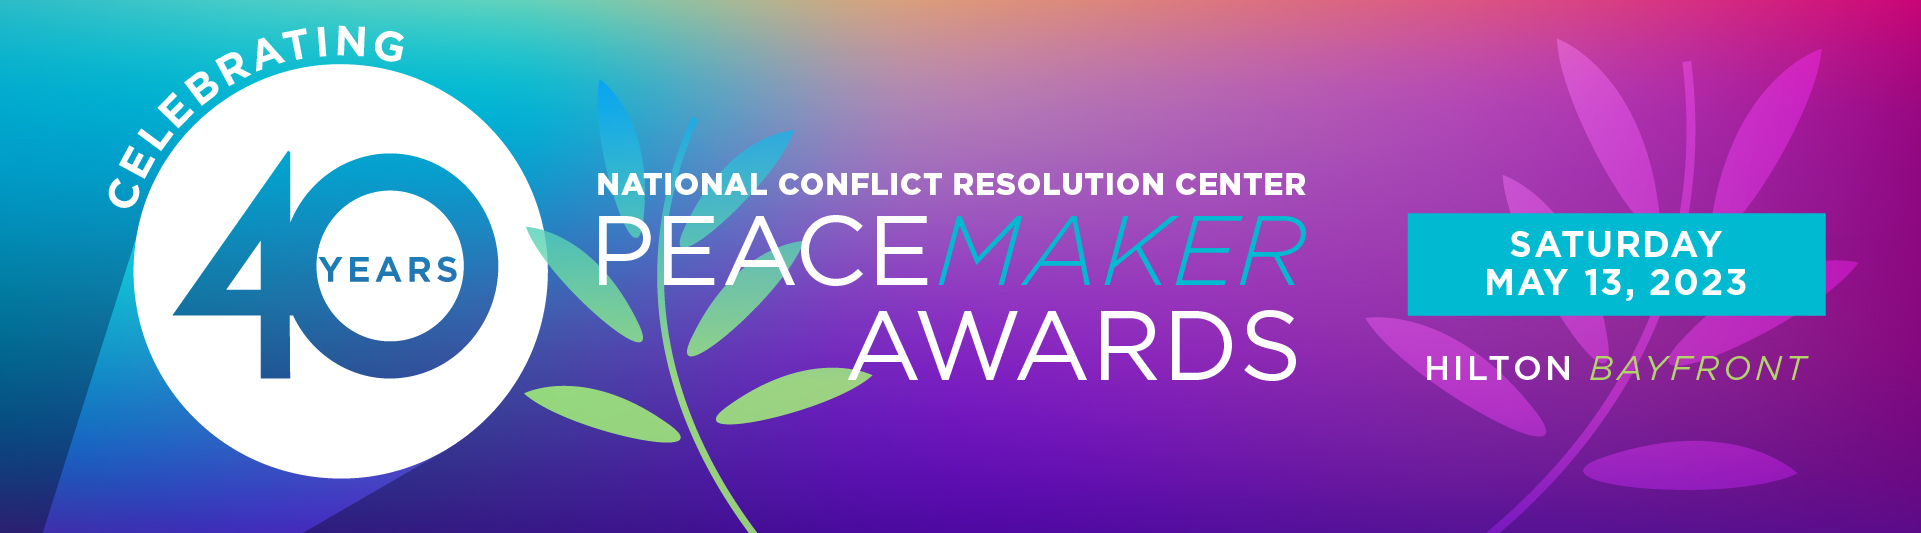 Peacemaker Awards 2023